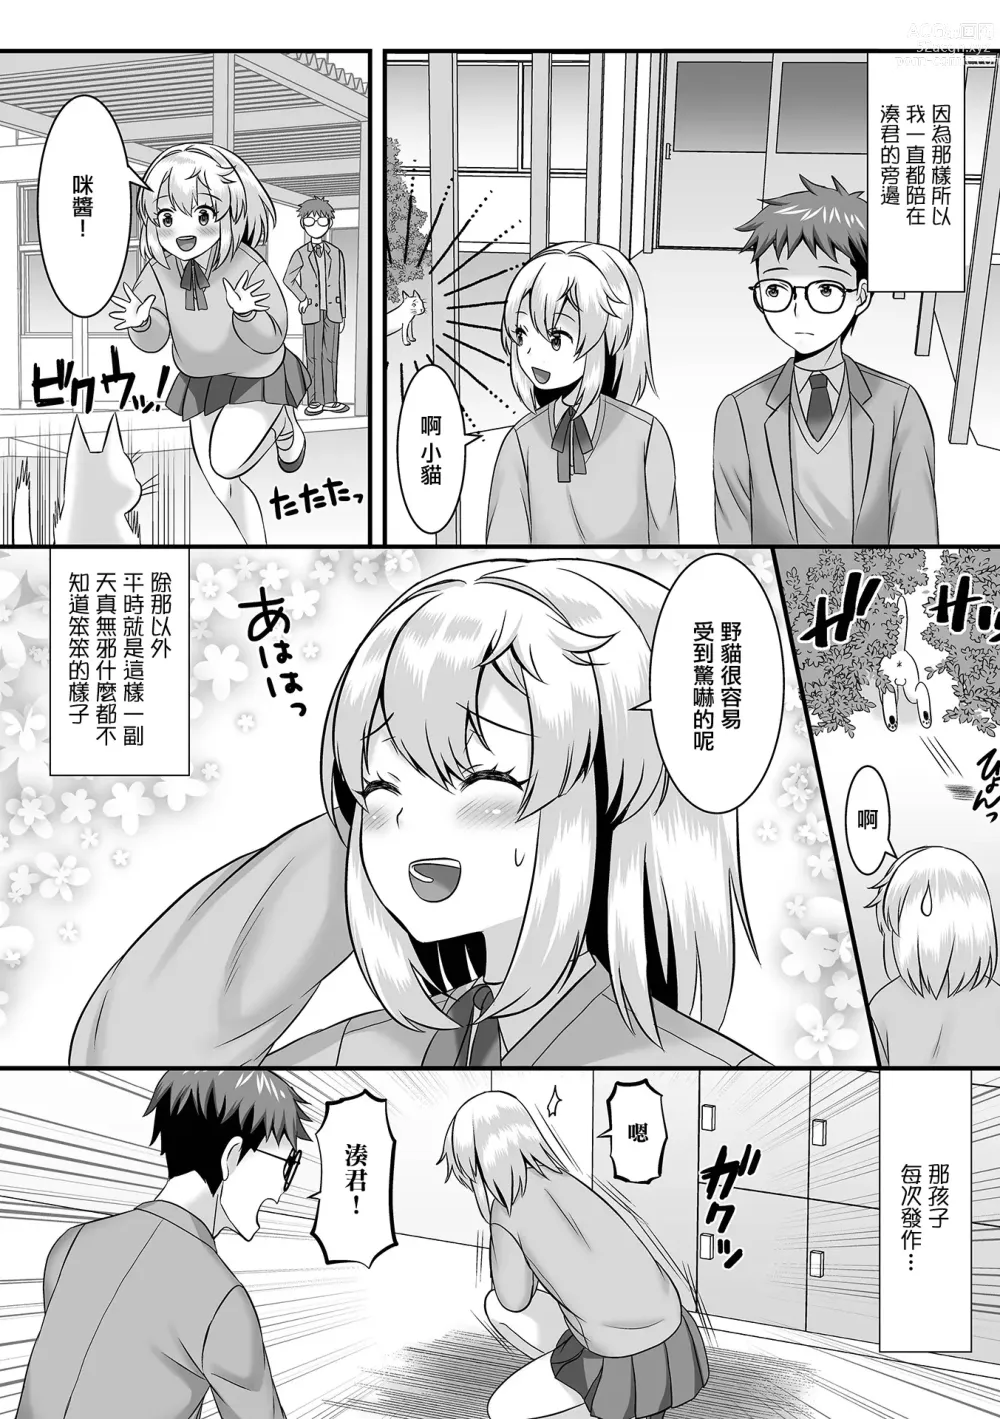 Page 4 of manga 湊君的屁股負責人